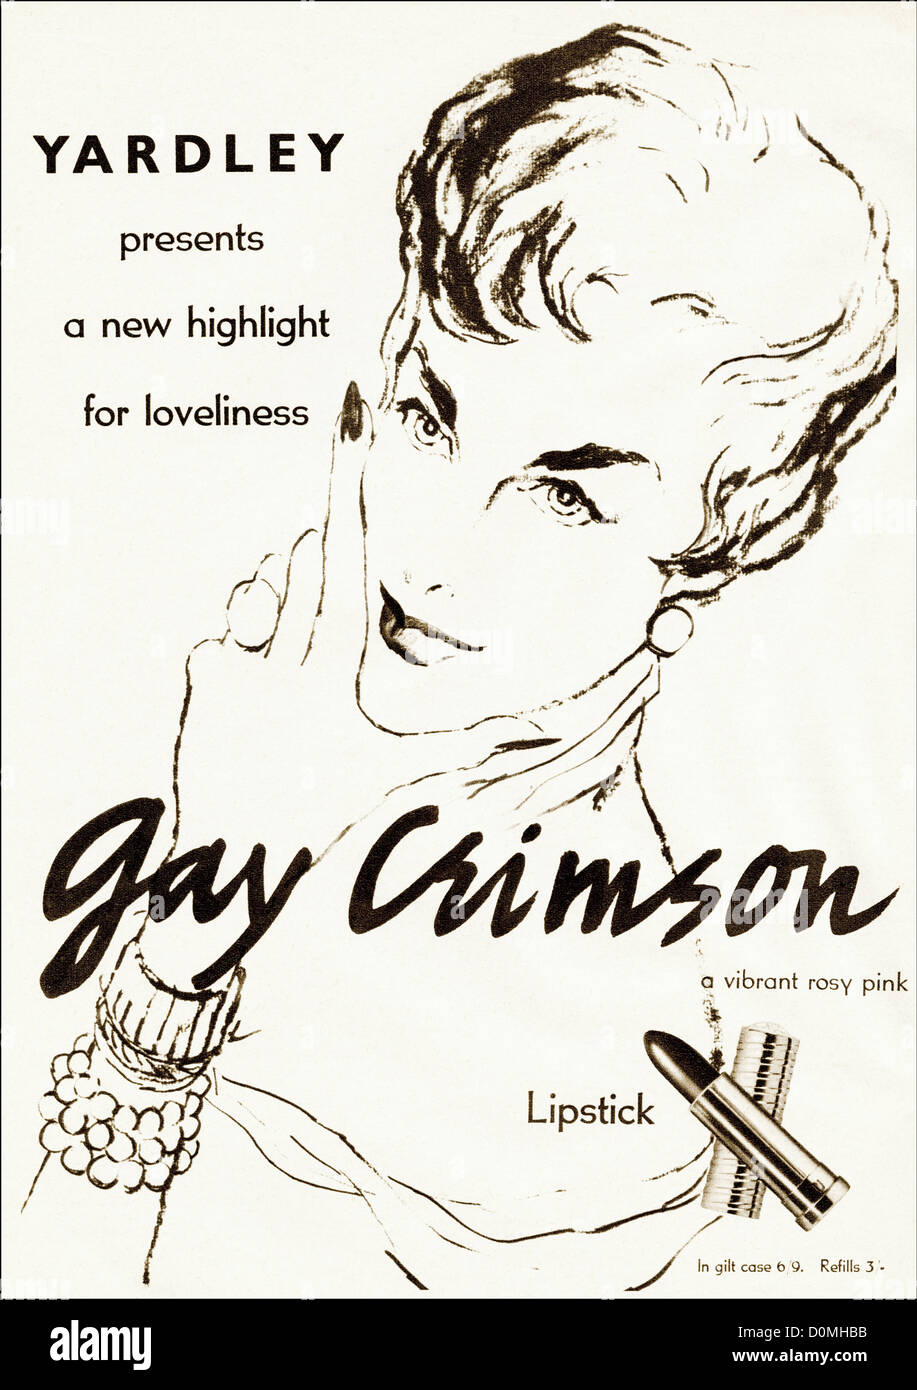 Originale degli anni cinquanta vintage annuncio stampa dalla rivista inglese pubblicità Yardley Gay Crimson rossetto circa 1955 Foto Stock